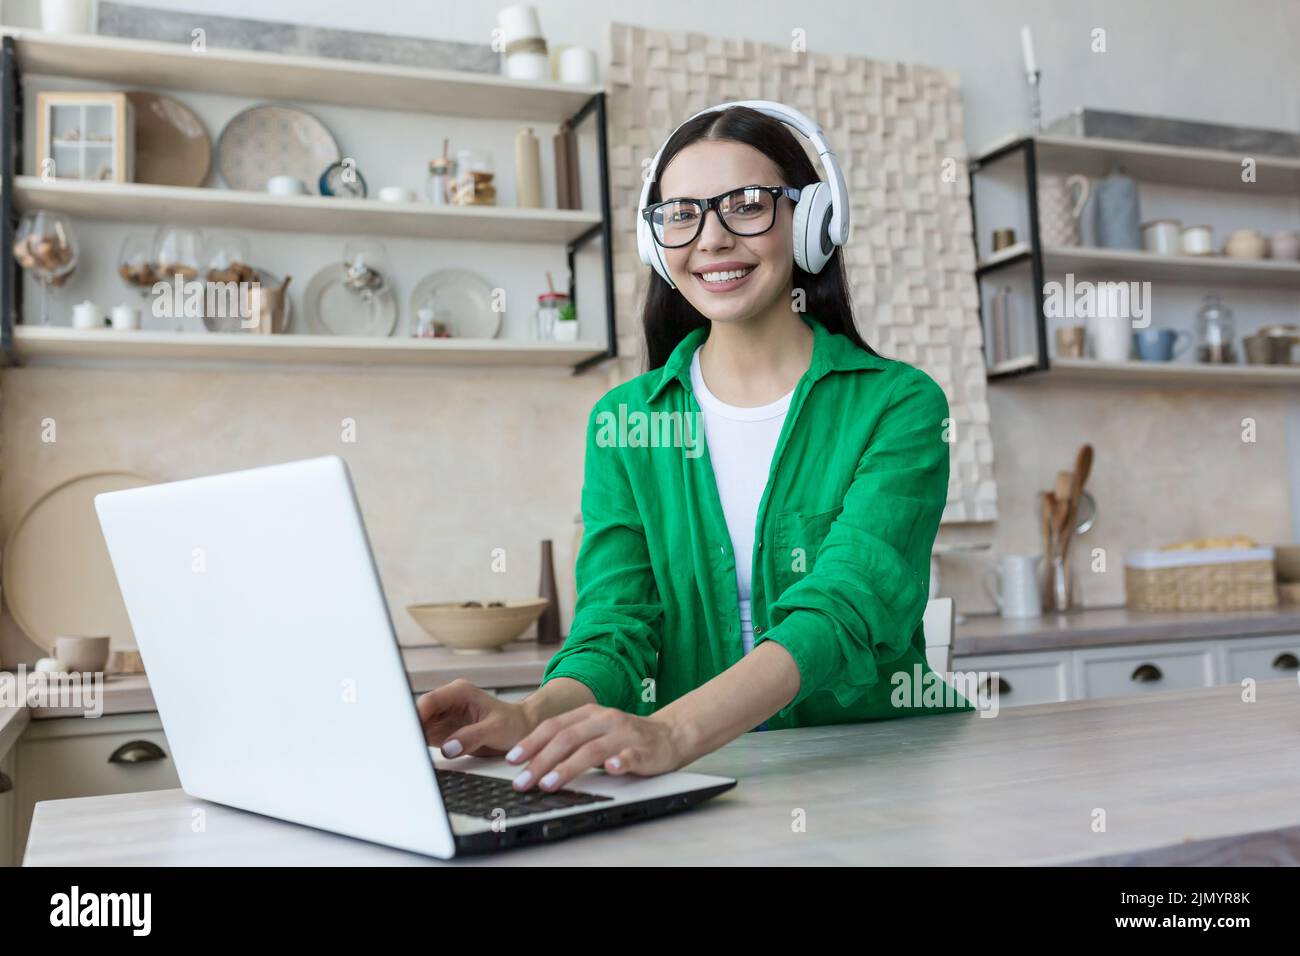 Portrait d'une jeune étudiante du millénaire étudiant en ligne à la maison à l'aide d'un ordinateur portable portant un casque, des vêtements verts et des lunettes. Il regarde la caméra, sourit. Banque D'Images